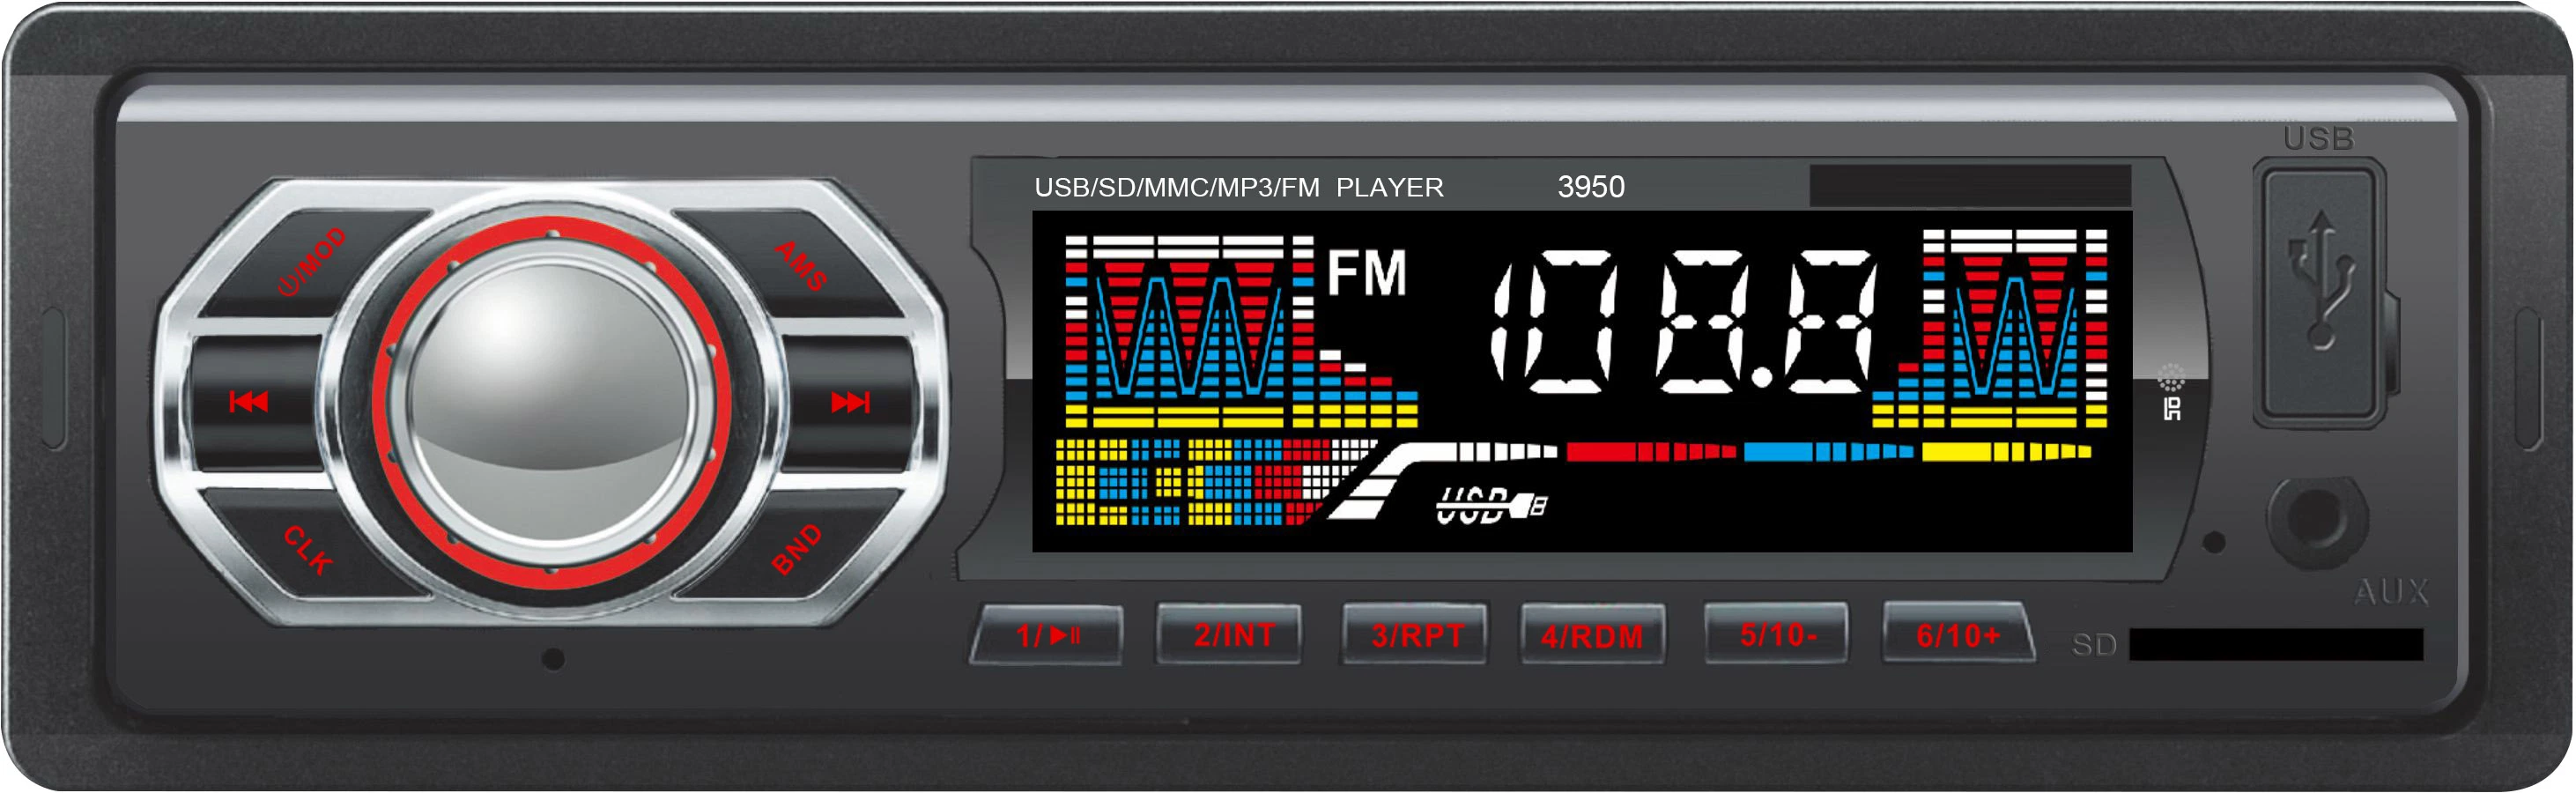 De coche USB doble Receptor de medios digitales coche reproductor de audio MP3.